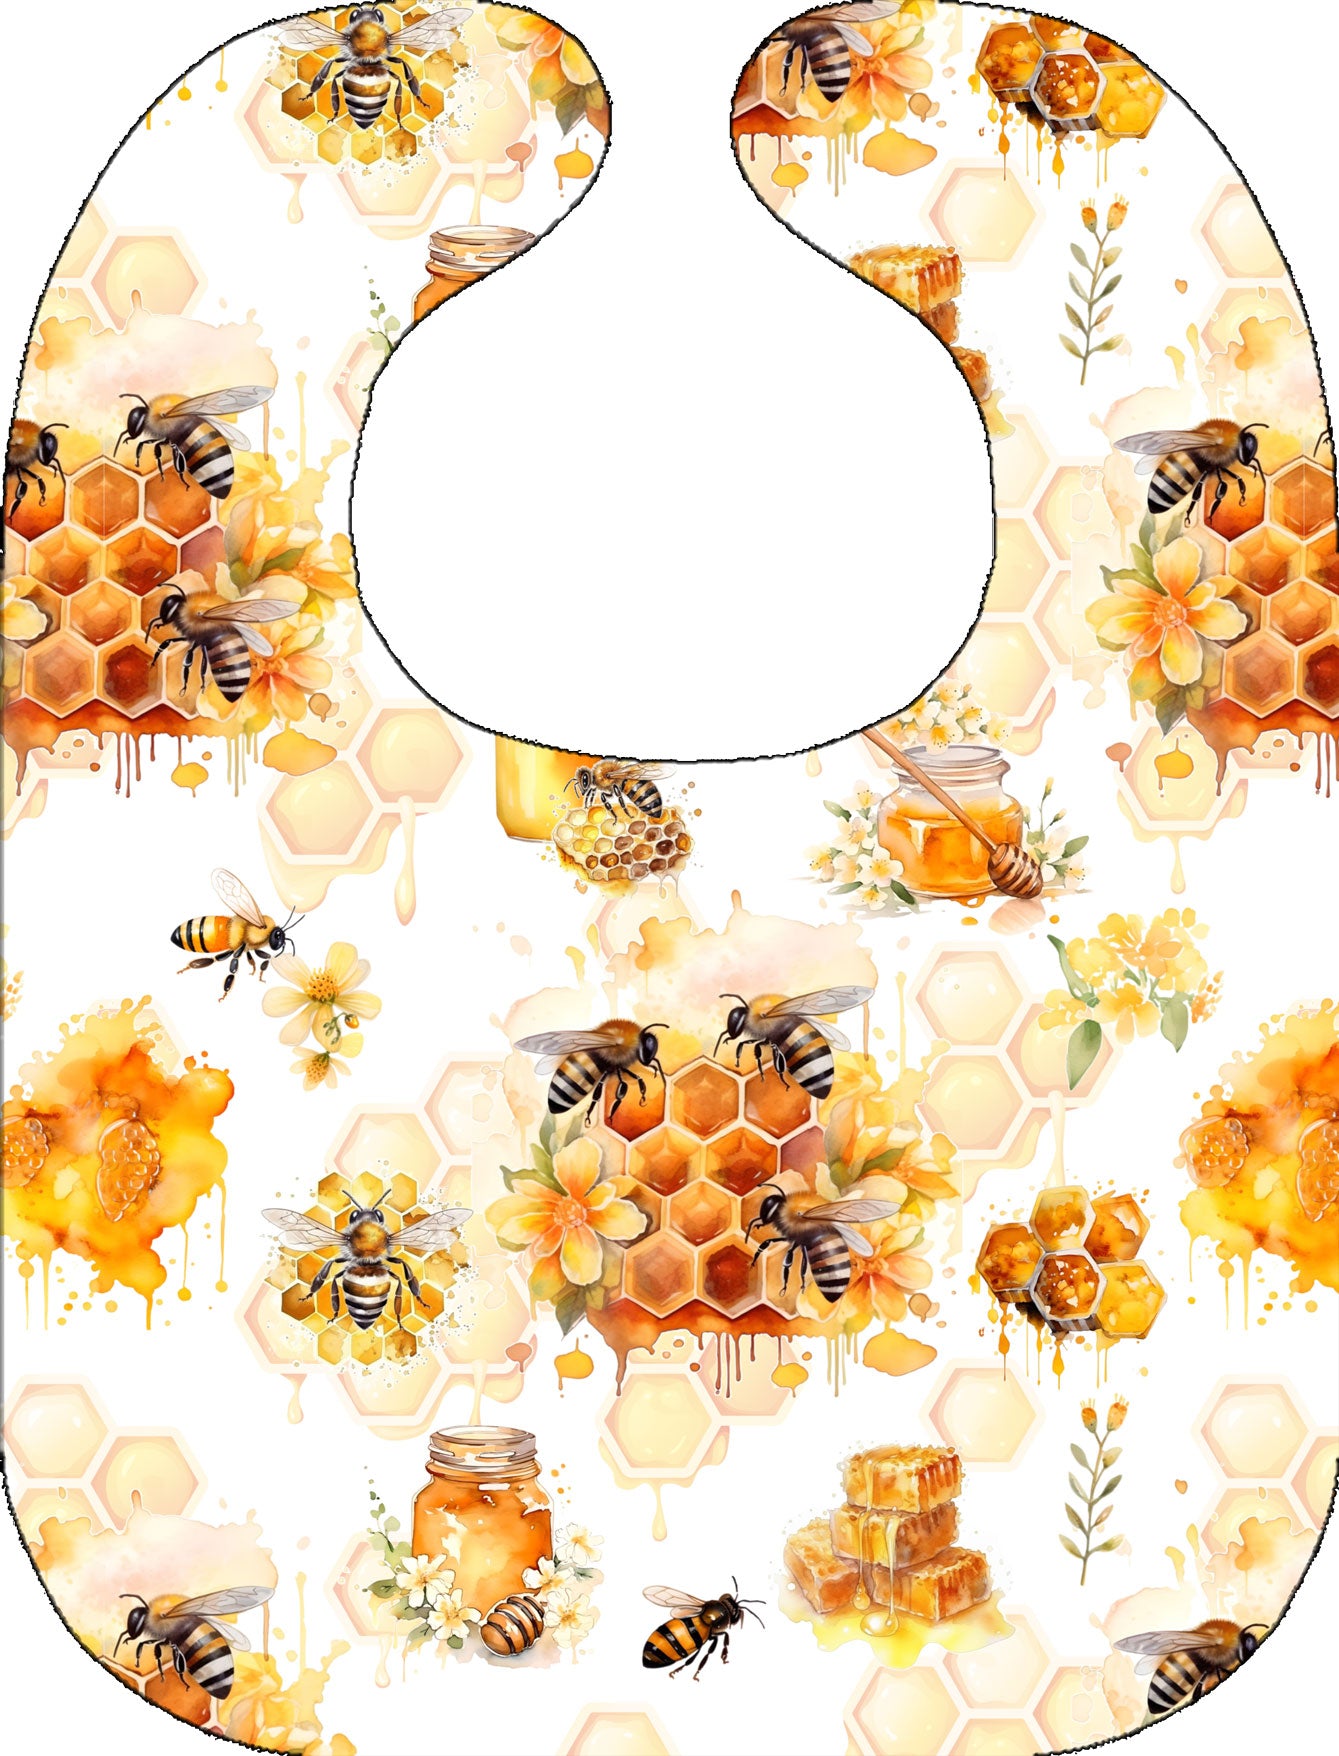 Bavette - Billie l'abeille (7236298768521)